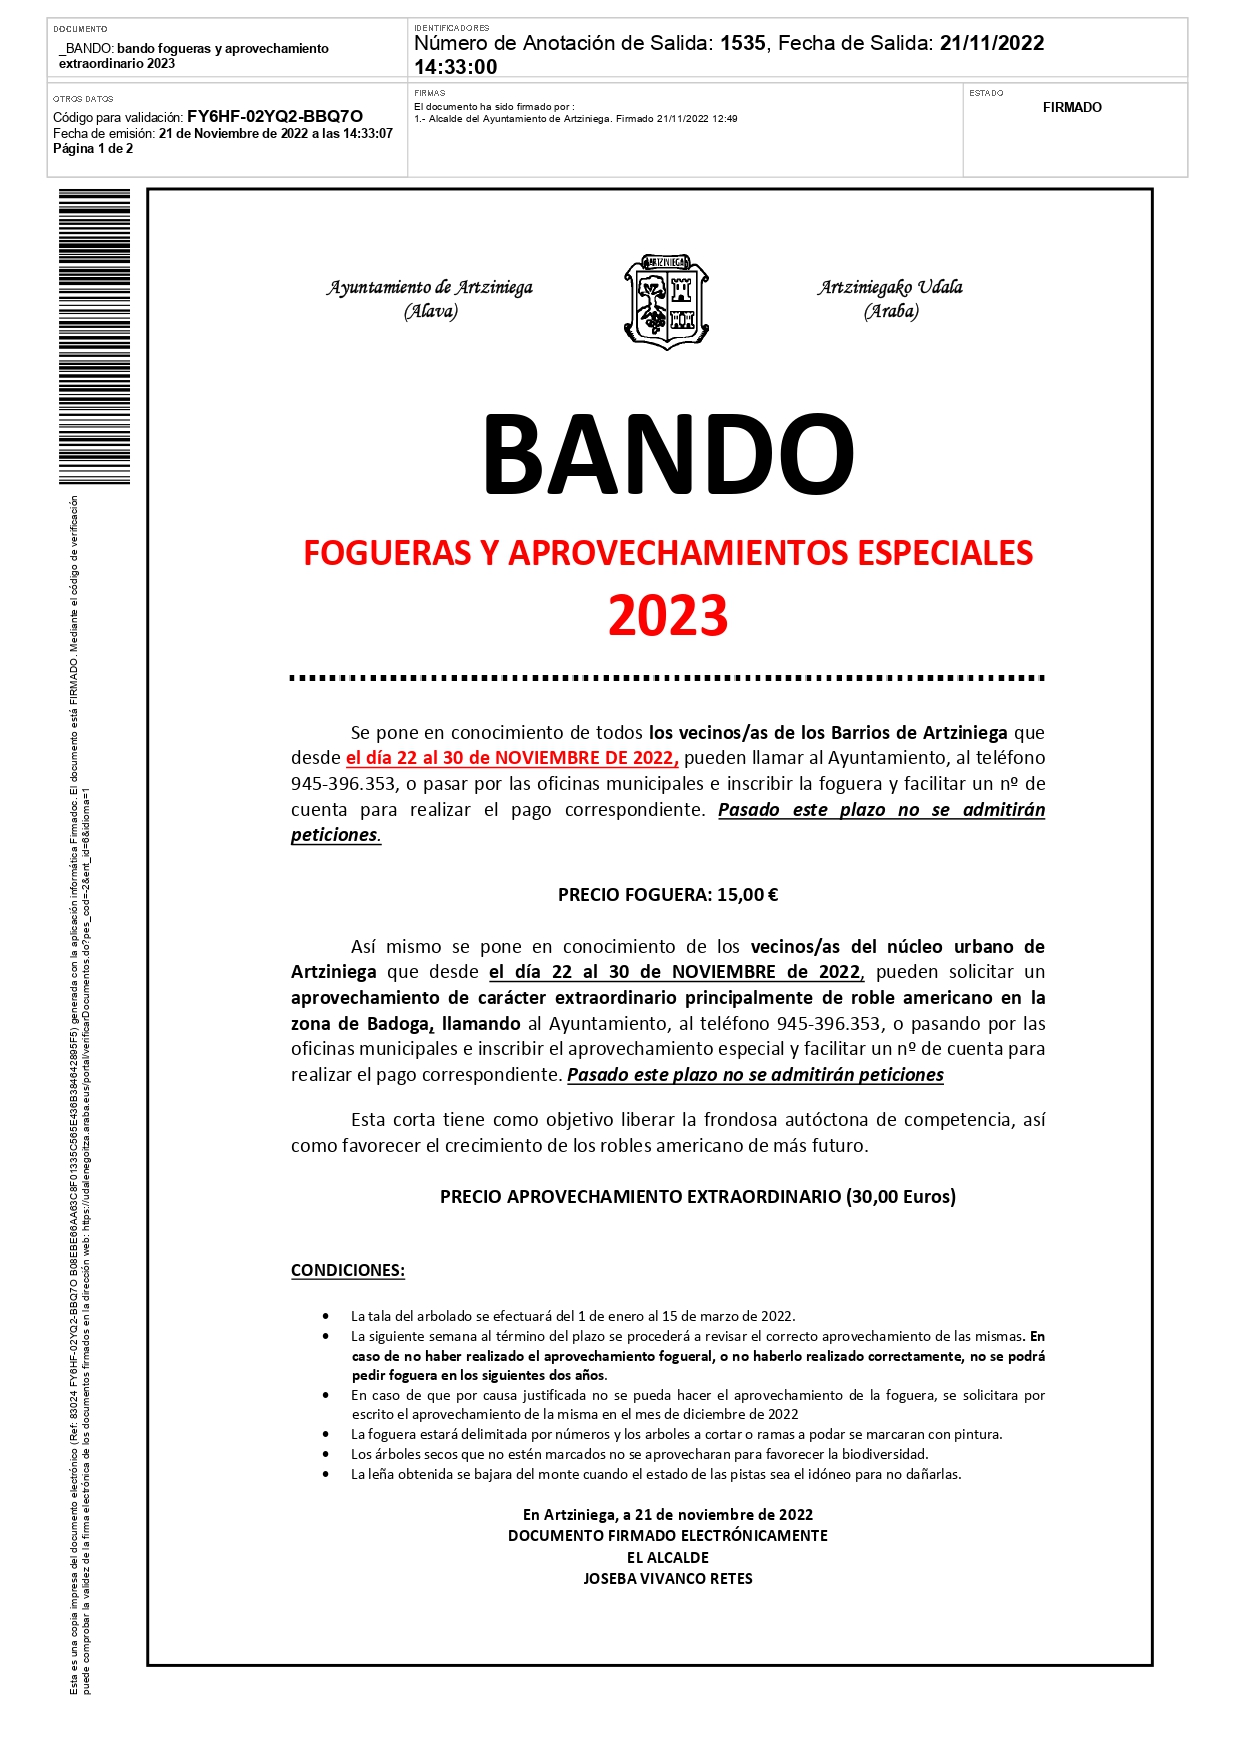 BANDO: FOGUERAS Y APROVECHAMIENTOS ESPECIALES 2023